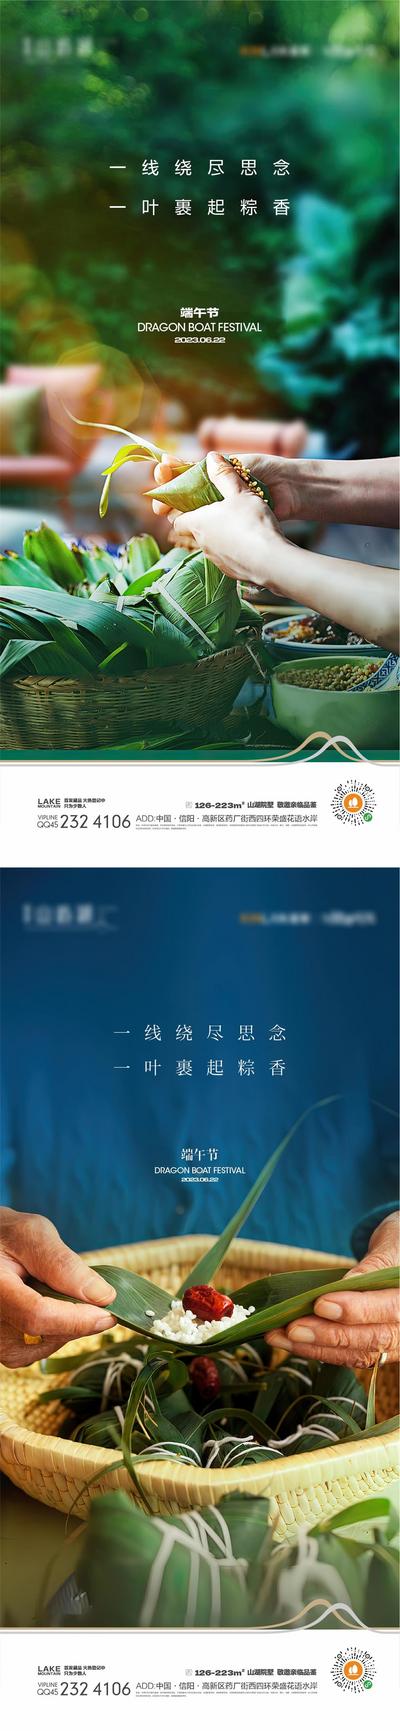 南门网 广告 海报 中国传统节日 端午节 简洁 粽子 包粽子 端午